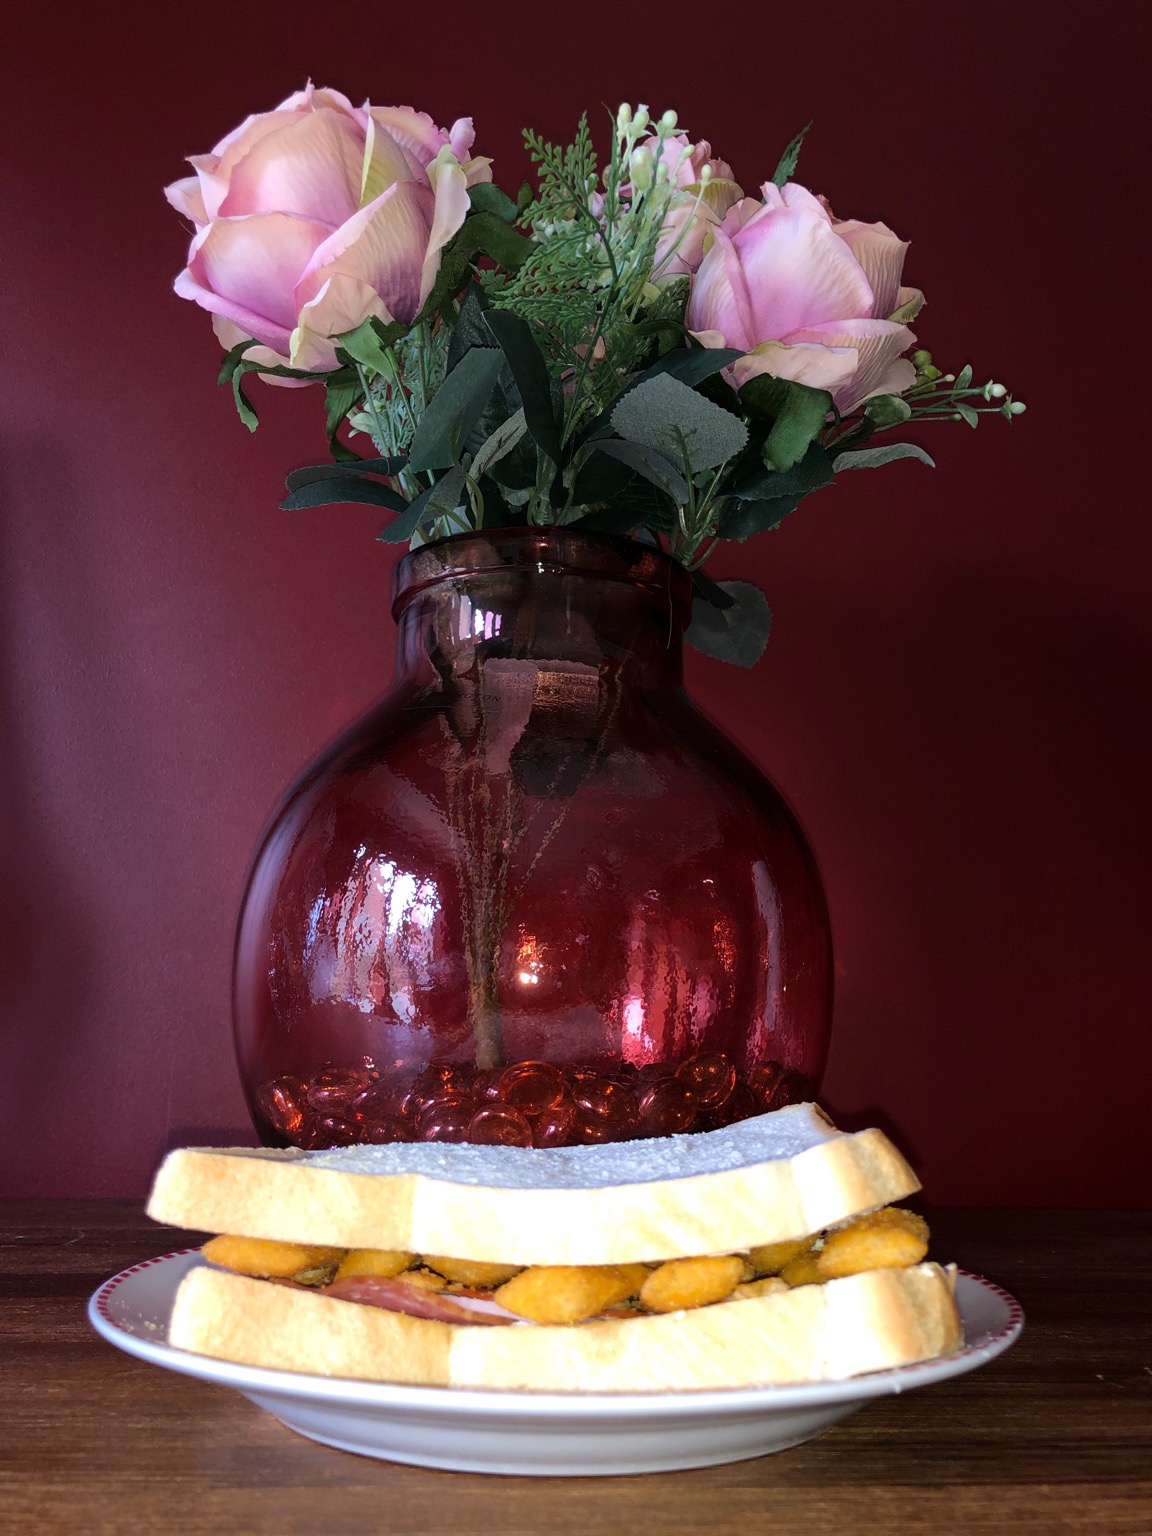 Scampi Fries and salami sandwich alongside vase